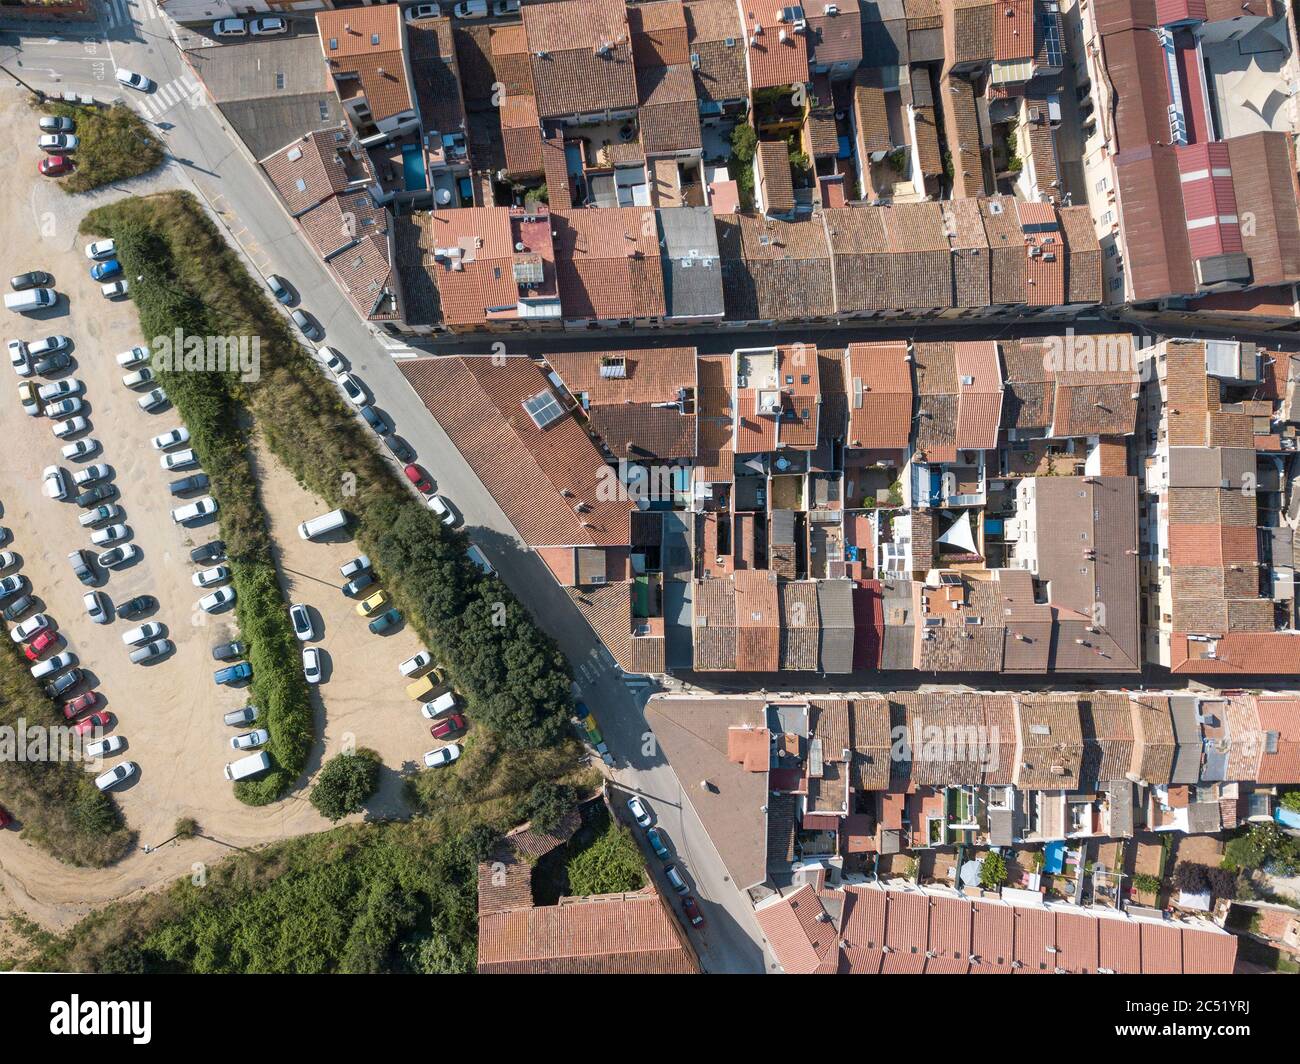 Drone immagine di un'immagine aerea dall'alto verso il basso di un'area urbana in una piccola città accanto ad alcuni alberi. Foto Stock